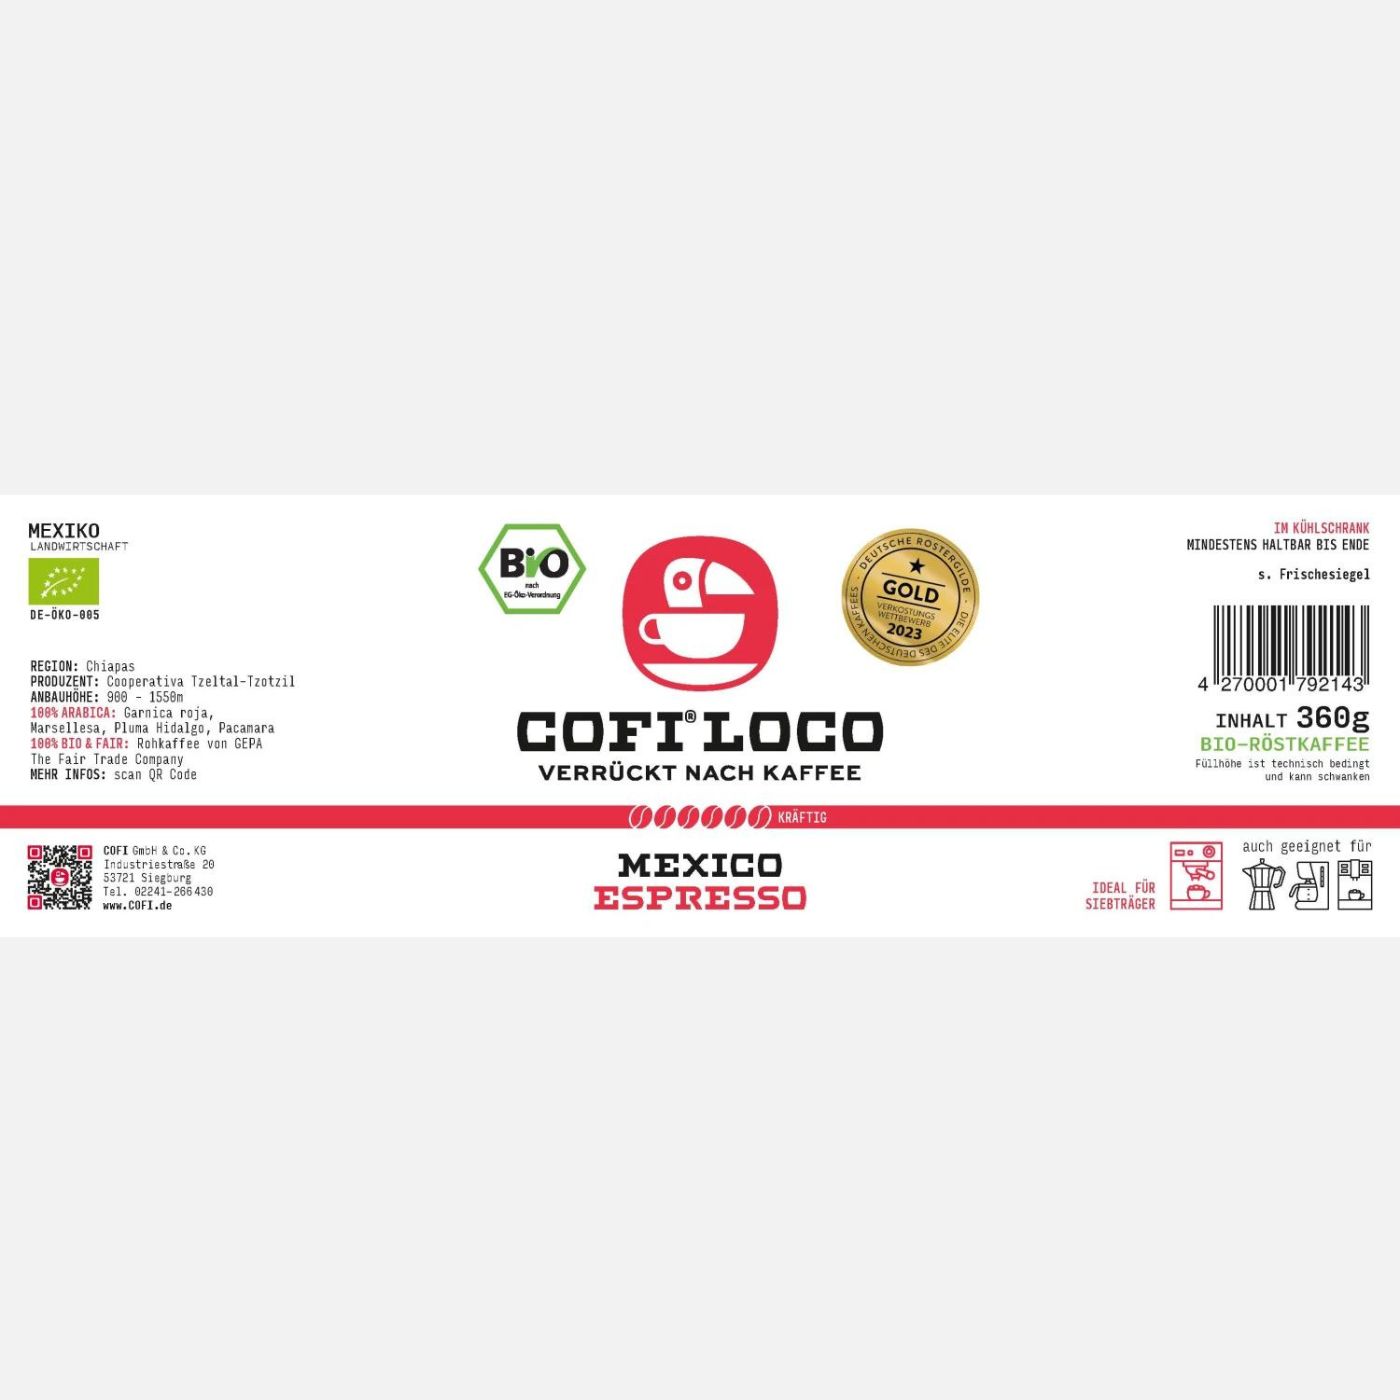 Bio fairtrade Kaffee in der Mehrwegflasche - Red Mexican Espresso